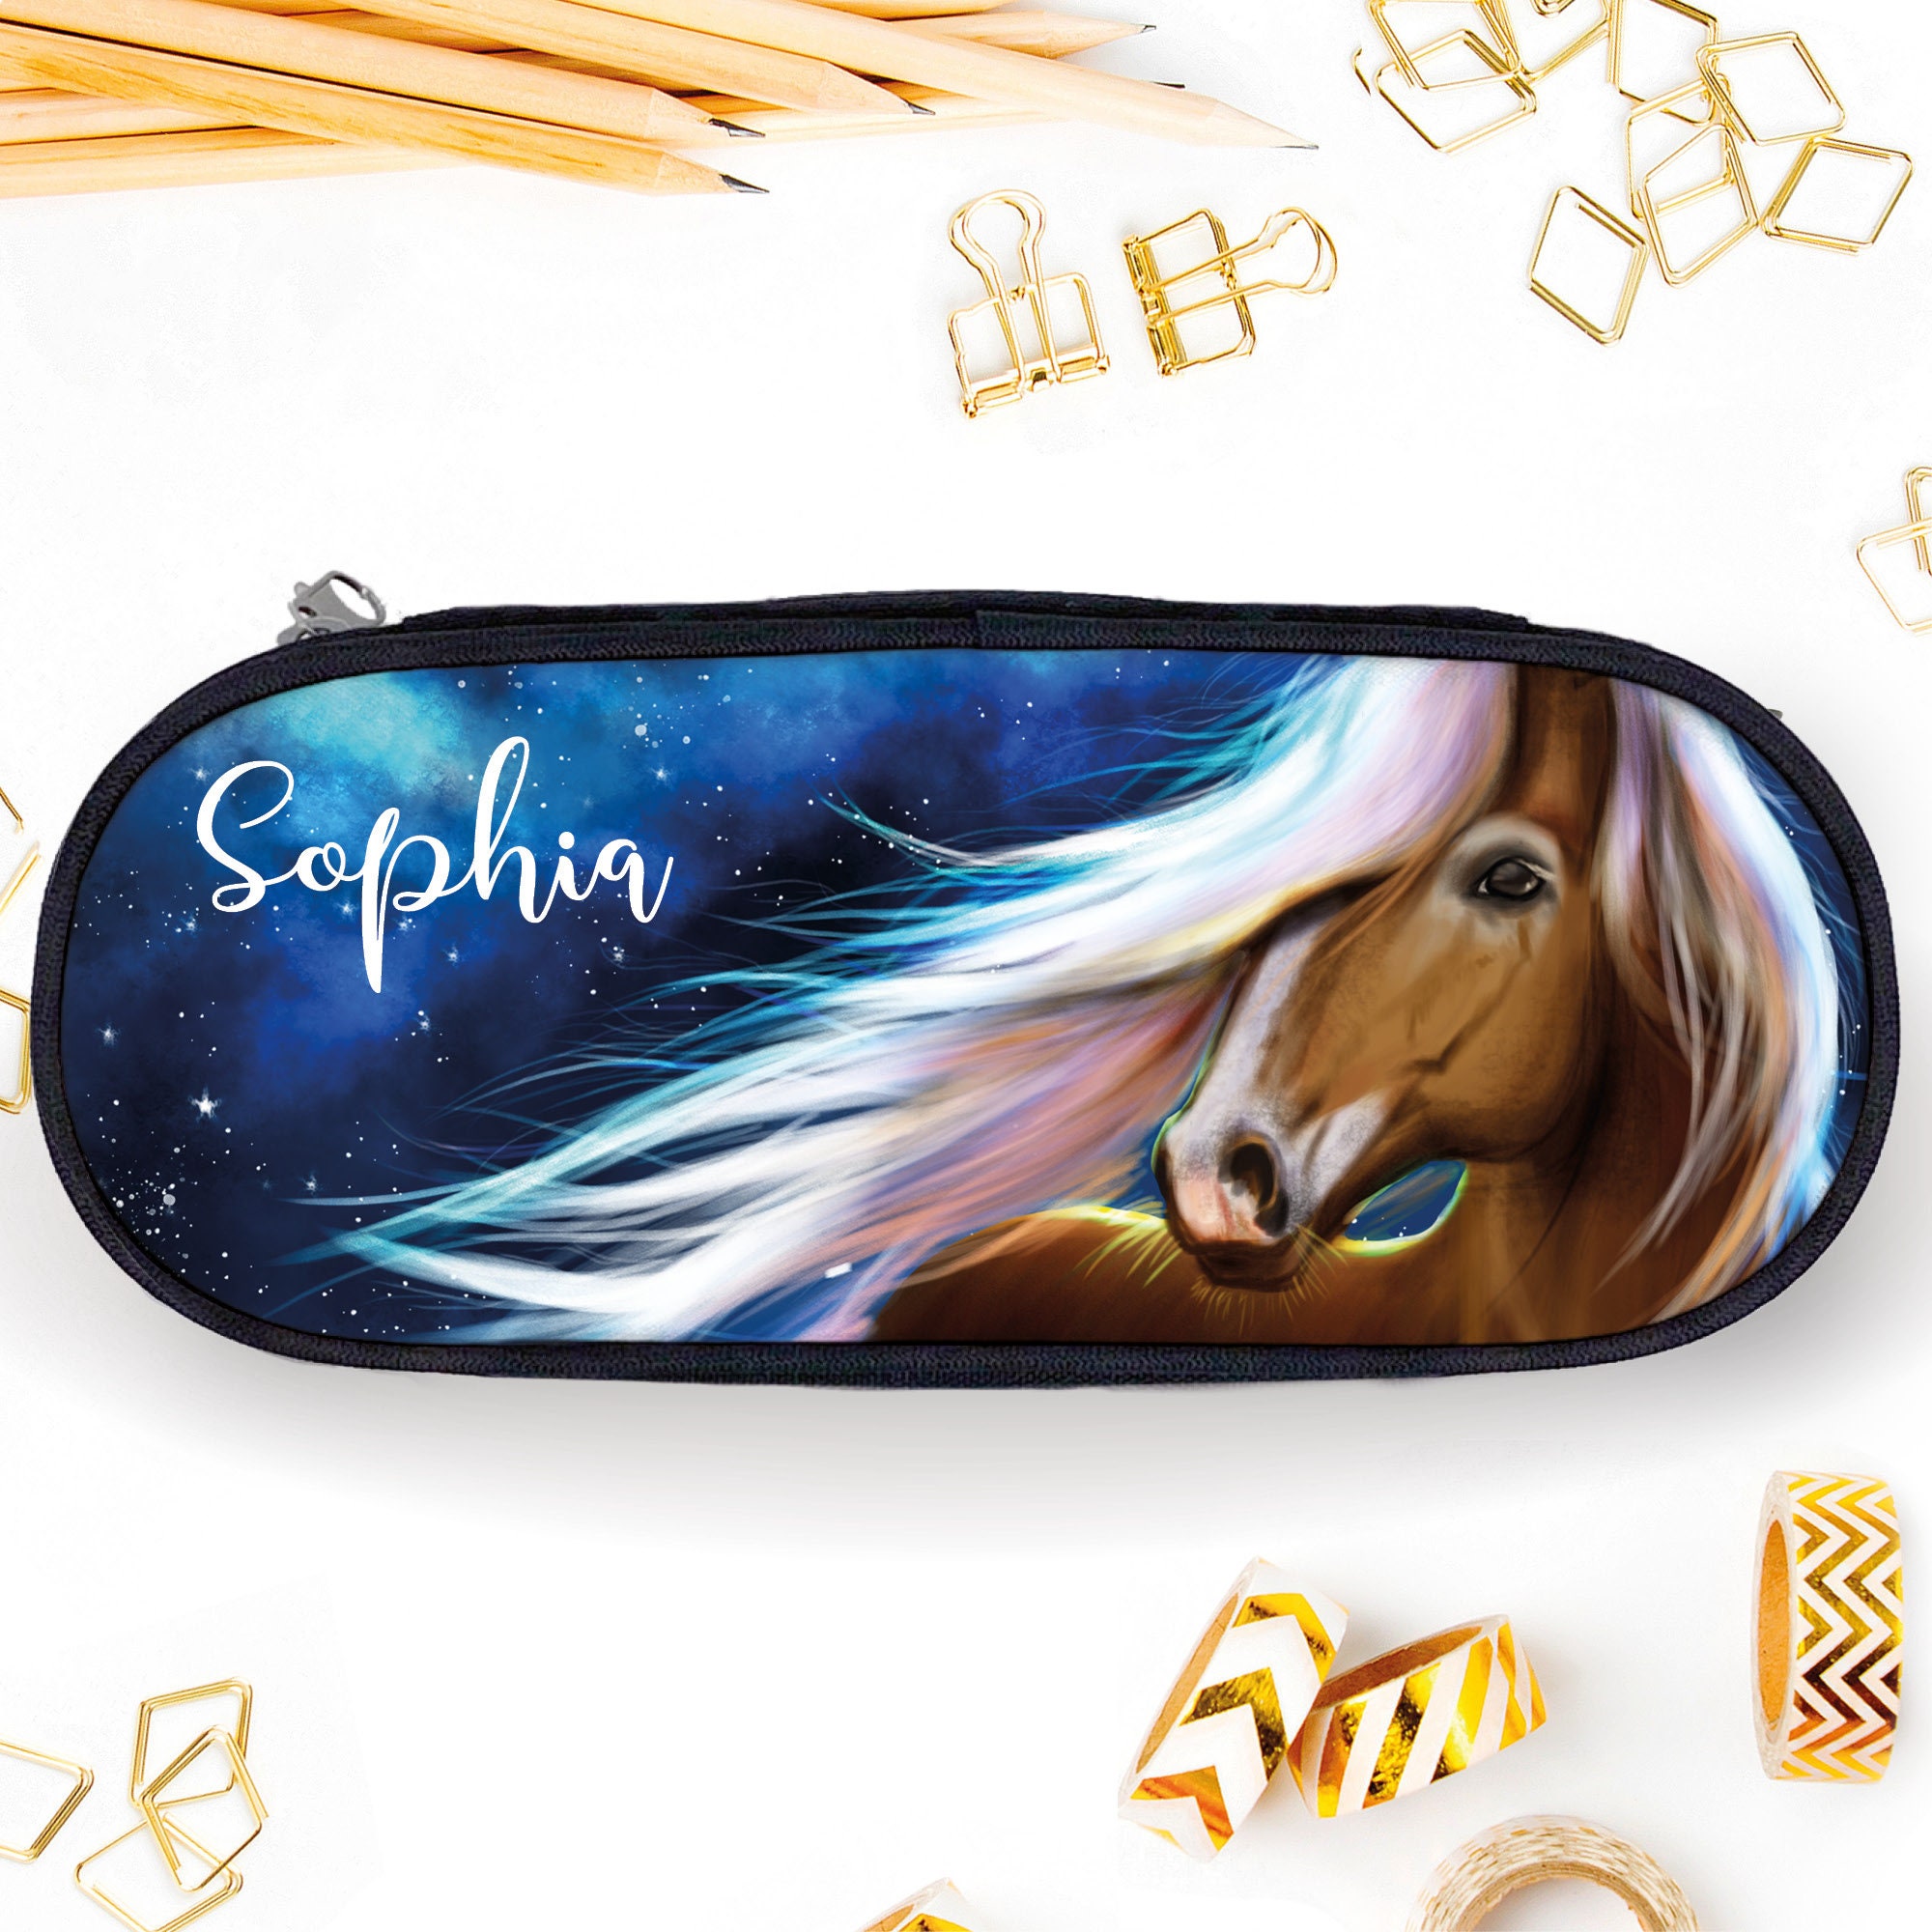 Auf dem Bild ist das Produkt: Federtasche Stiftebox Schlampermäppchen braunes Pferd mit blauem Hintergrund, Schulanfang Schule, Einschulungsgeschenk zum Preis von €19.9 abgebildet.